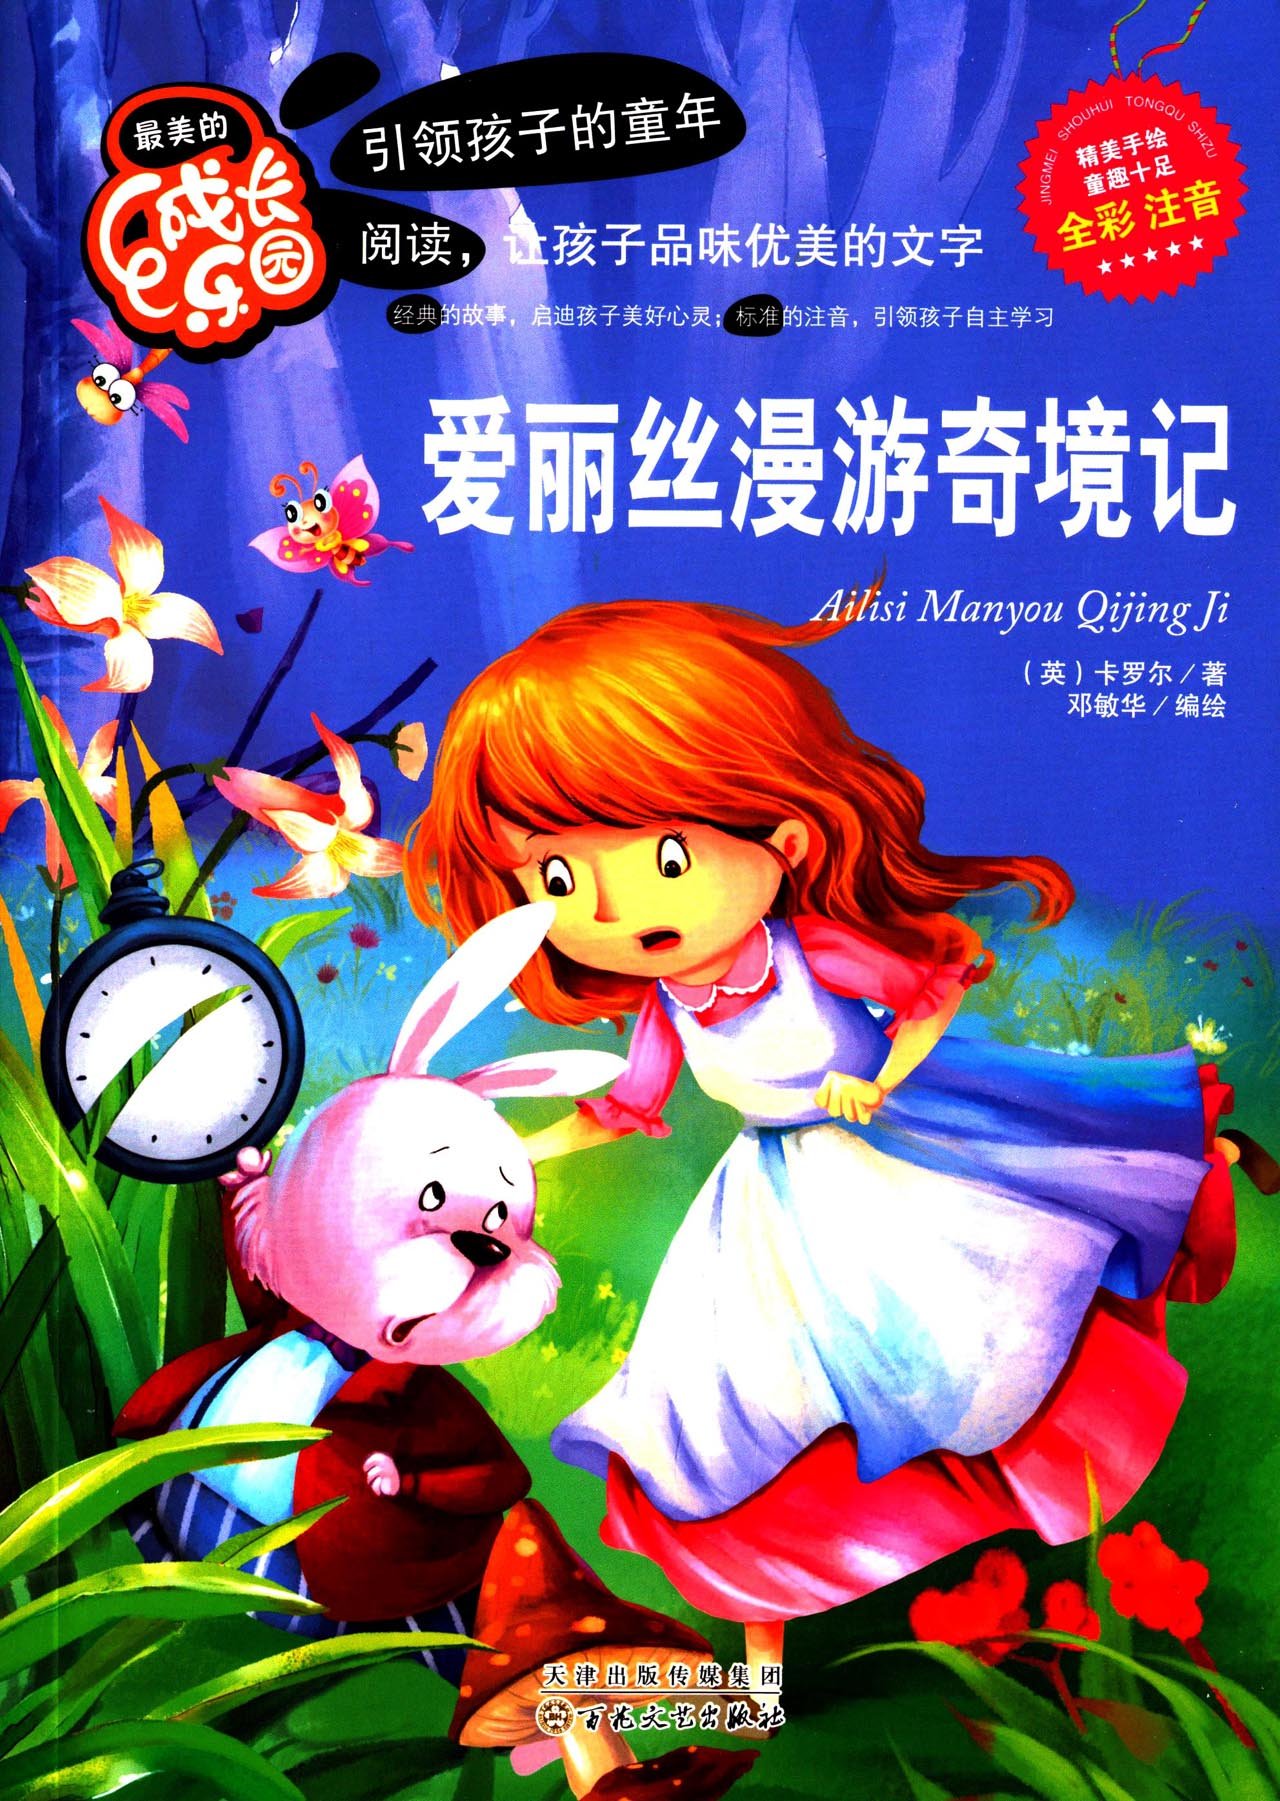 儿童童话故事MP3下载--爱丽丝漫游奇境1-童话之家-以爱之心做事,感恩之心做人!